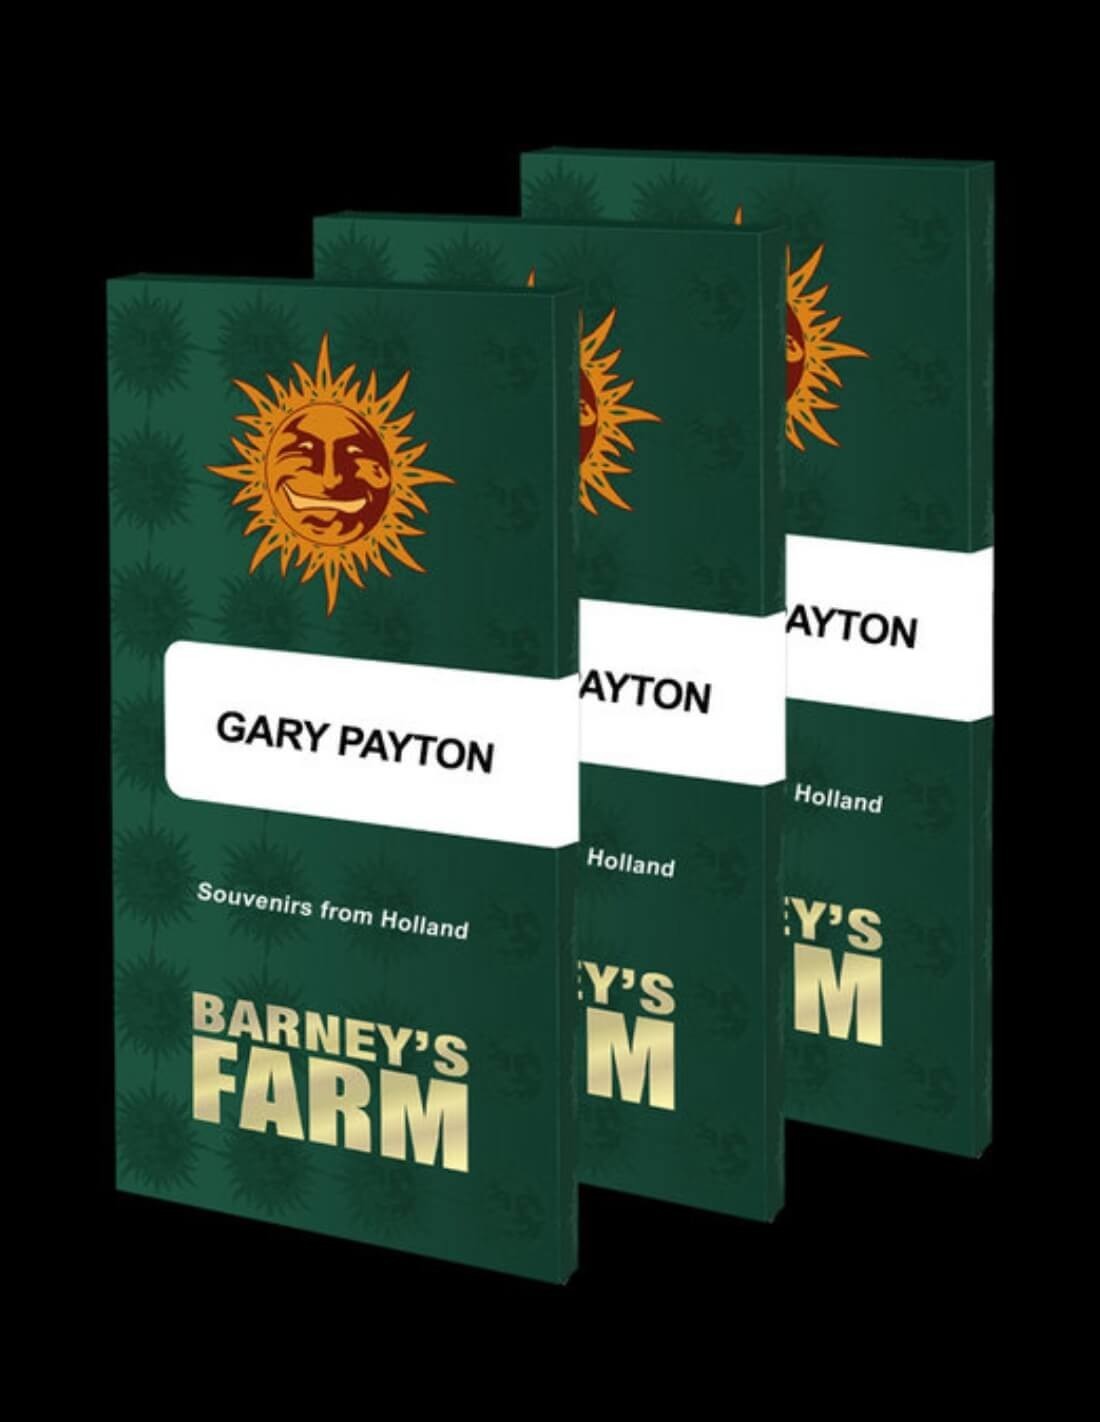 Gary Payton par Barney's Farm Seeds